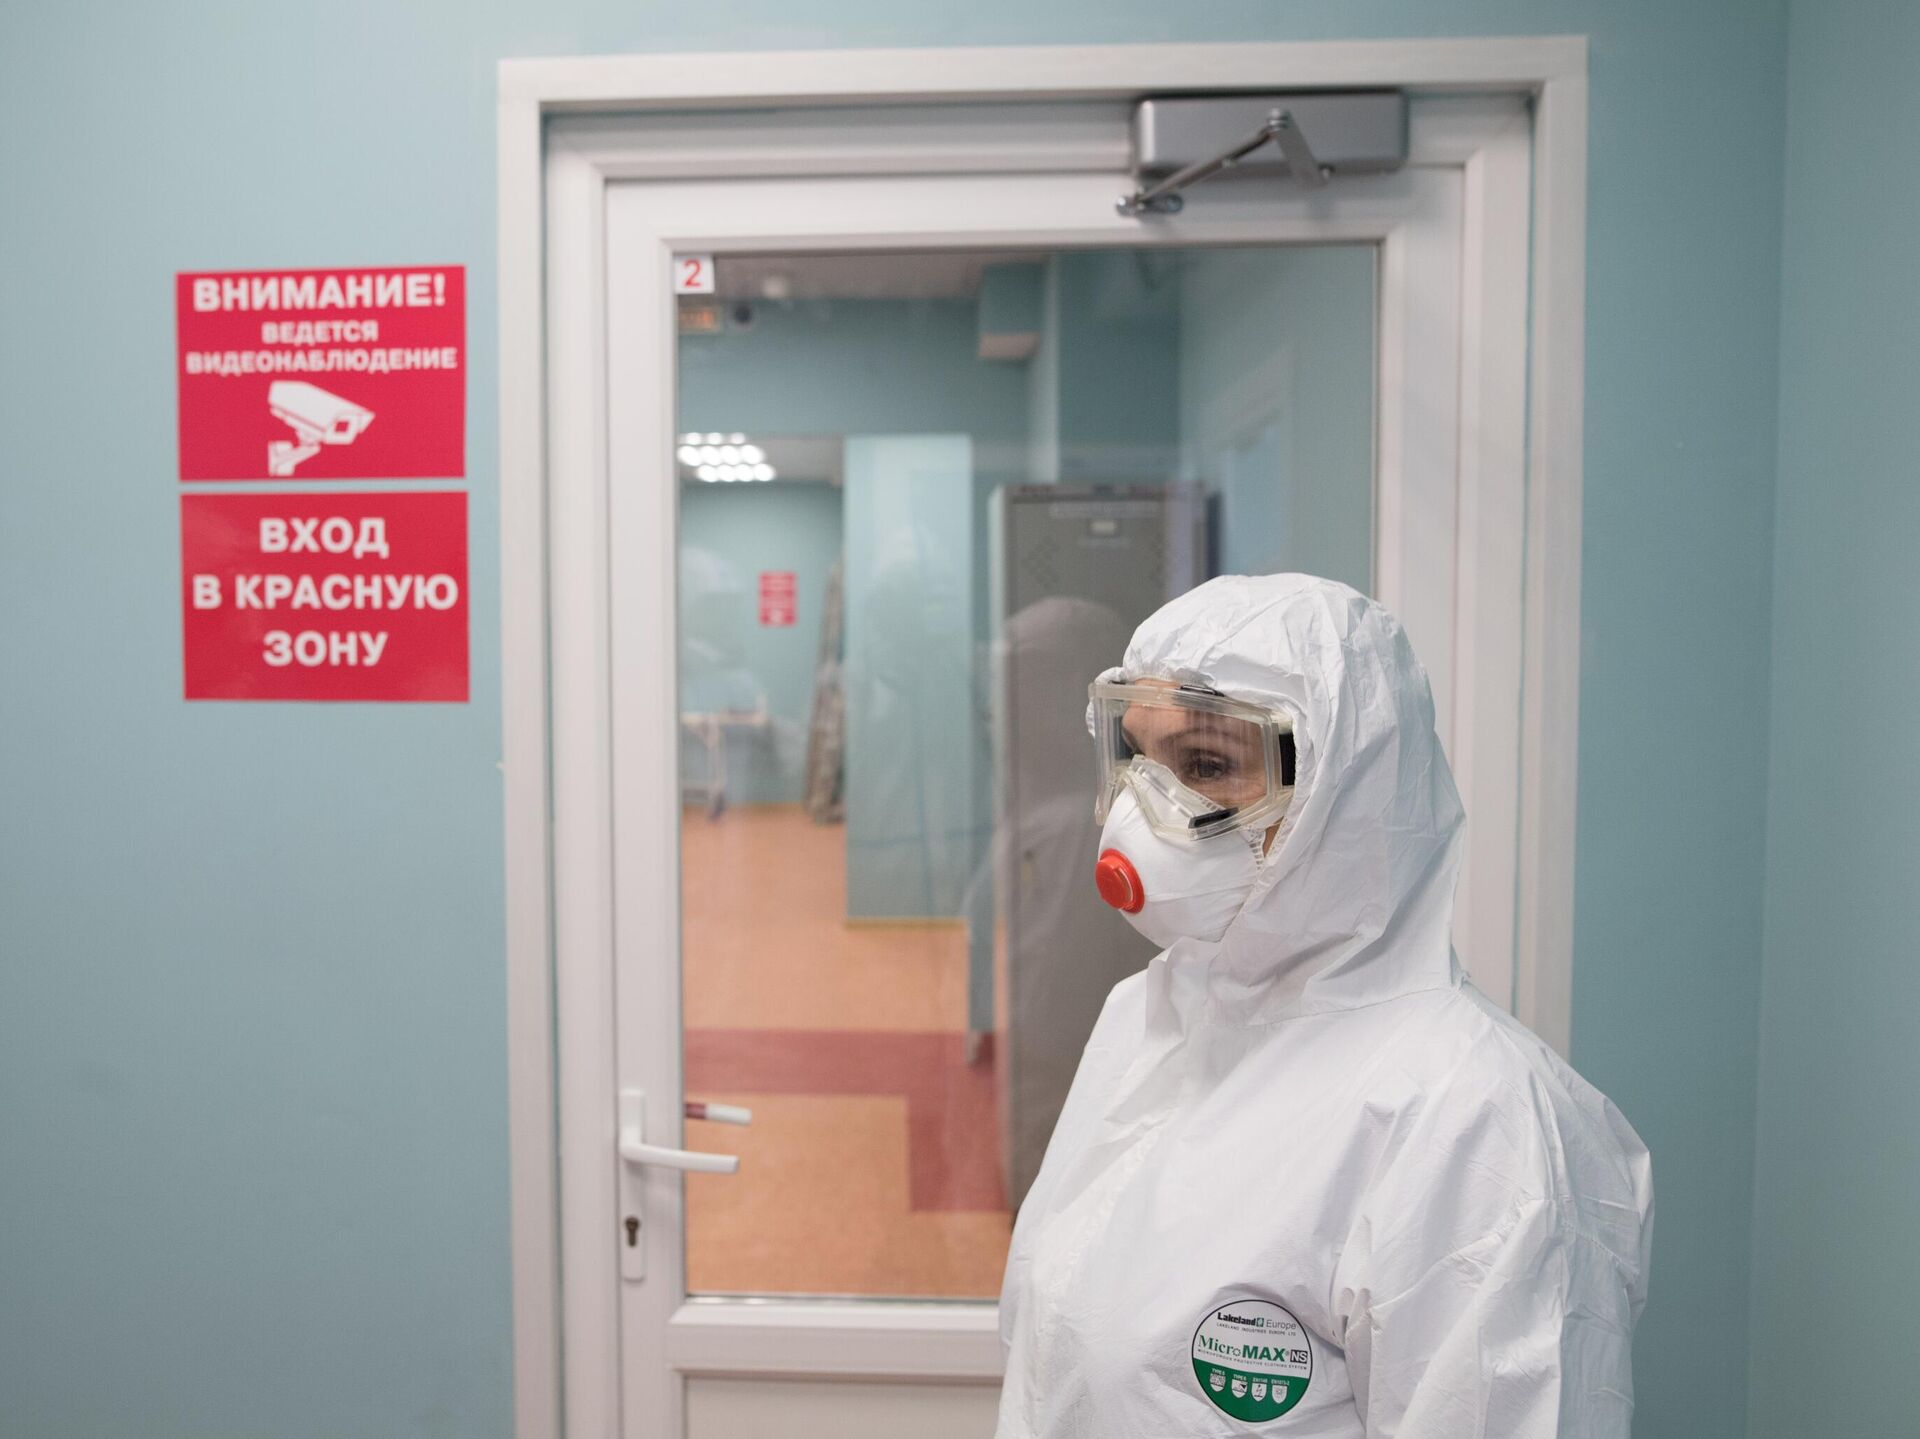 Медсестра из Ставрополья через суд добилась выплаты компенсации за заражение COVID-19